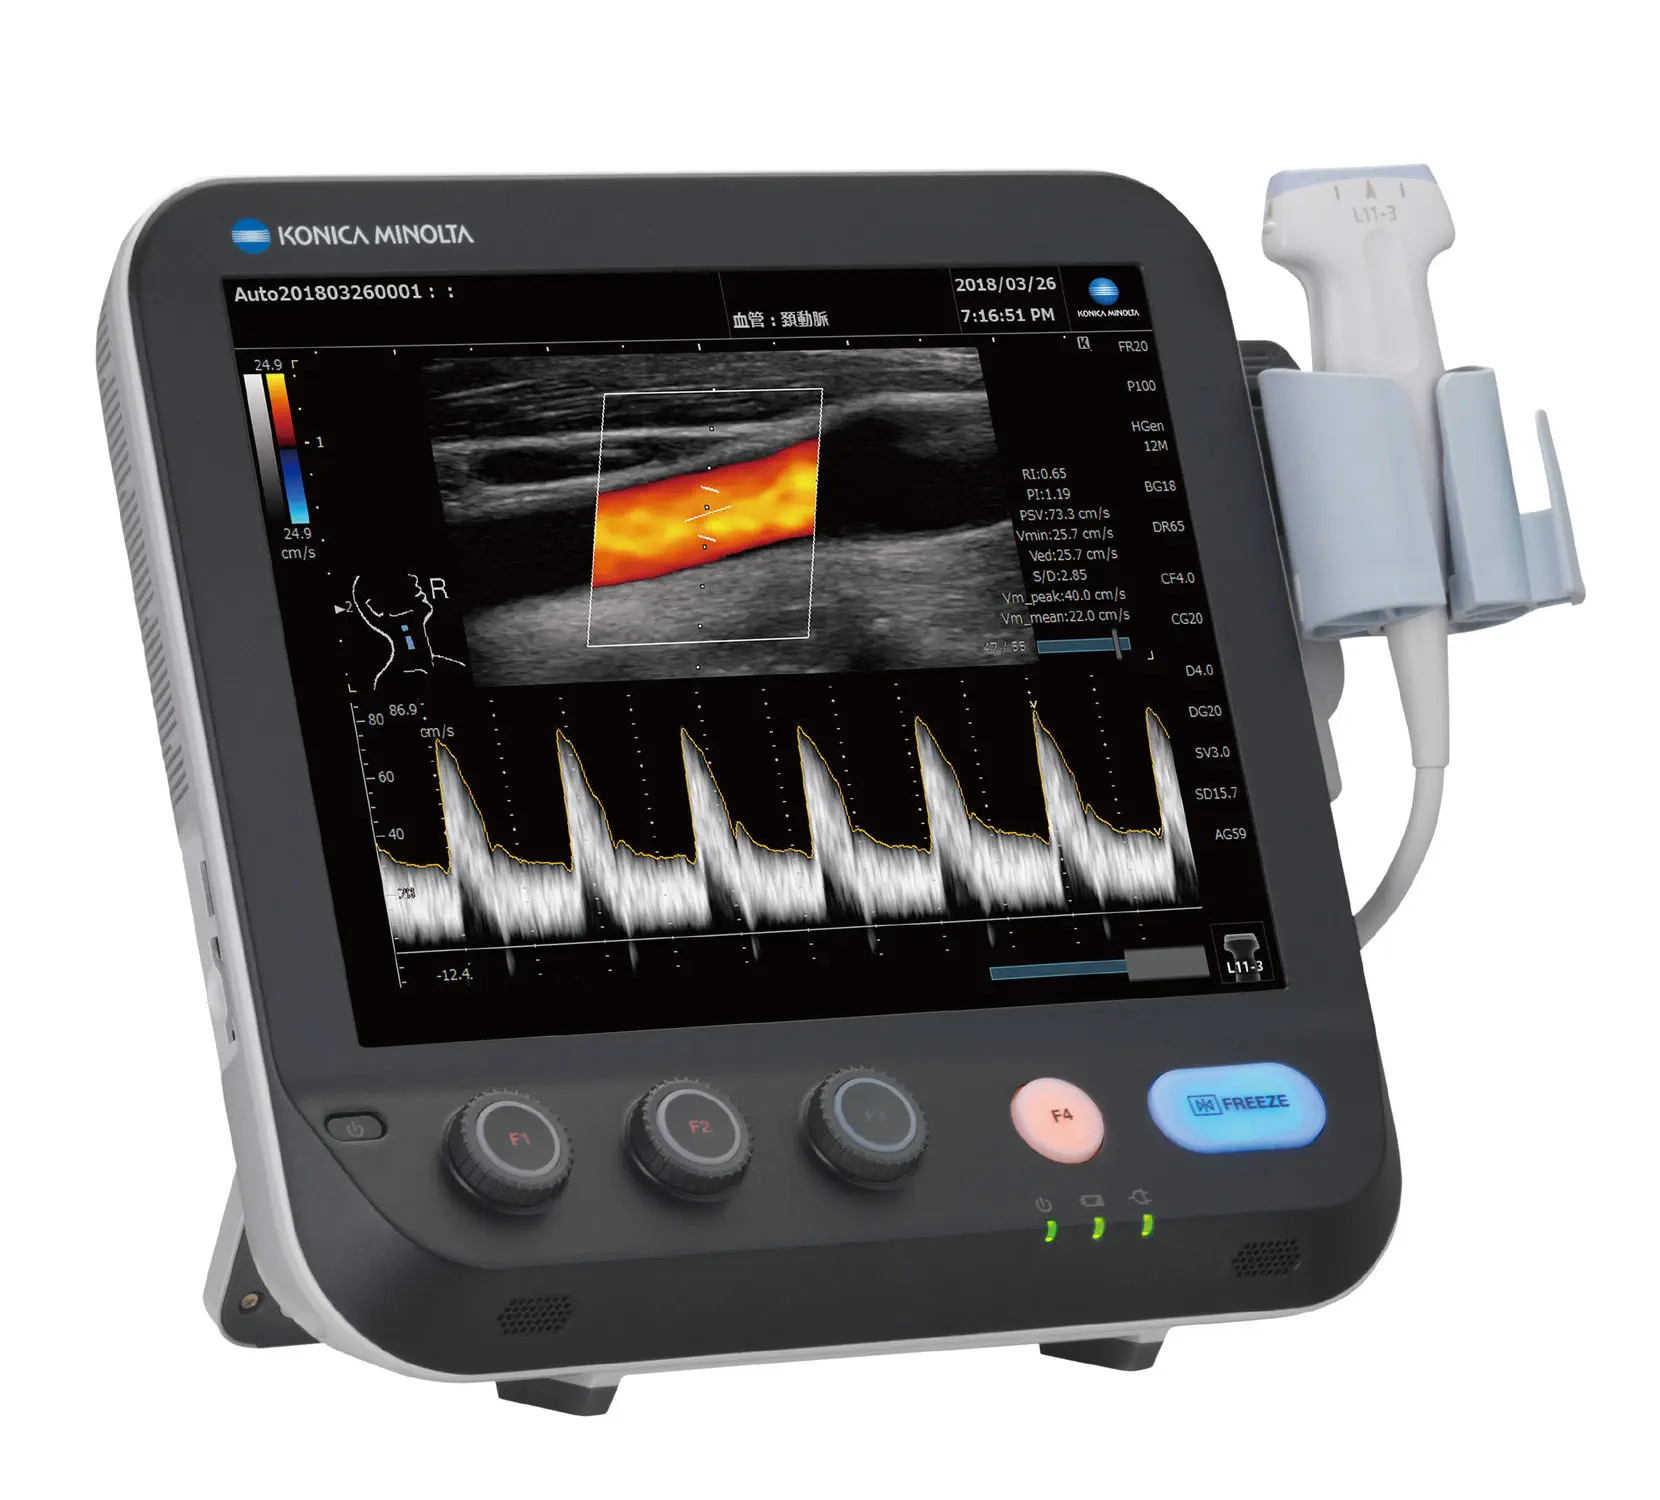 เครื่องตรวจอวัยวะภายในด้วยคลื่นเสียงความคมชัดสูงแบบพกพา  Portable ultrasound system SONIMAGE MX1 PLATINUM  Konica Minolta